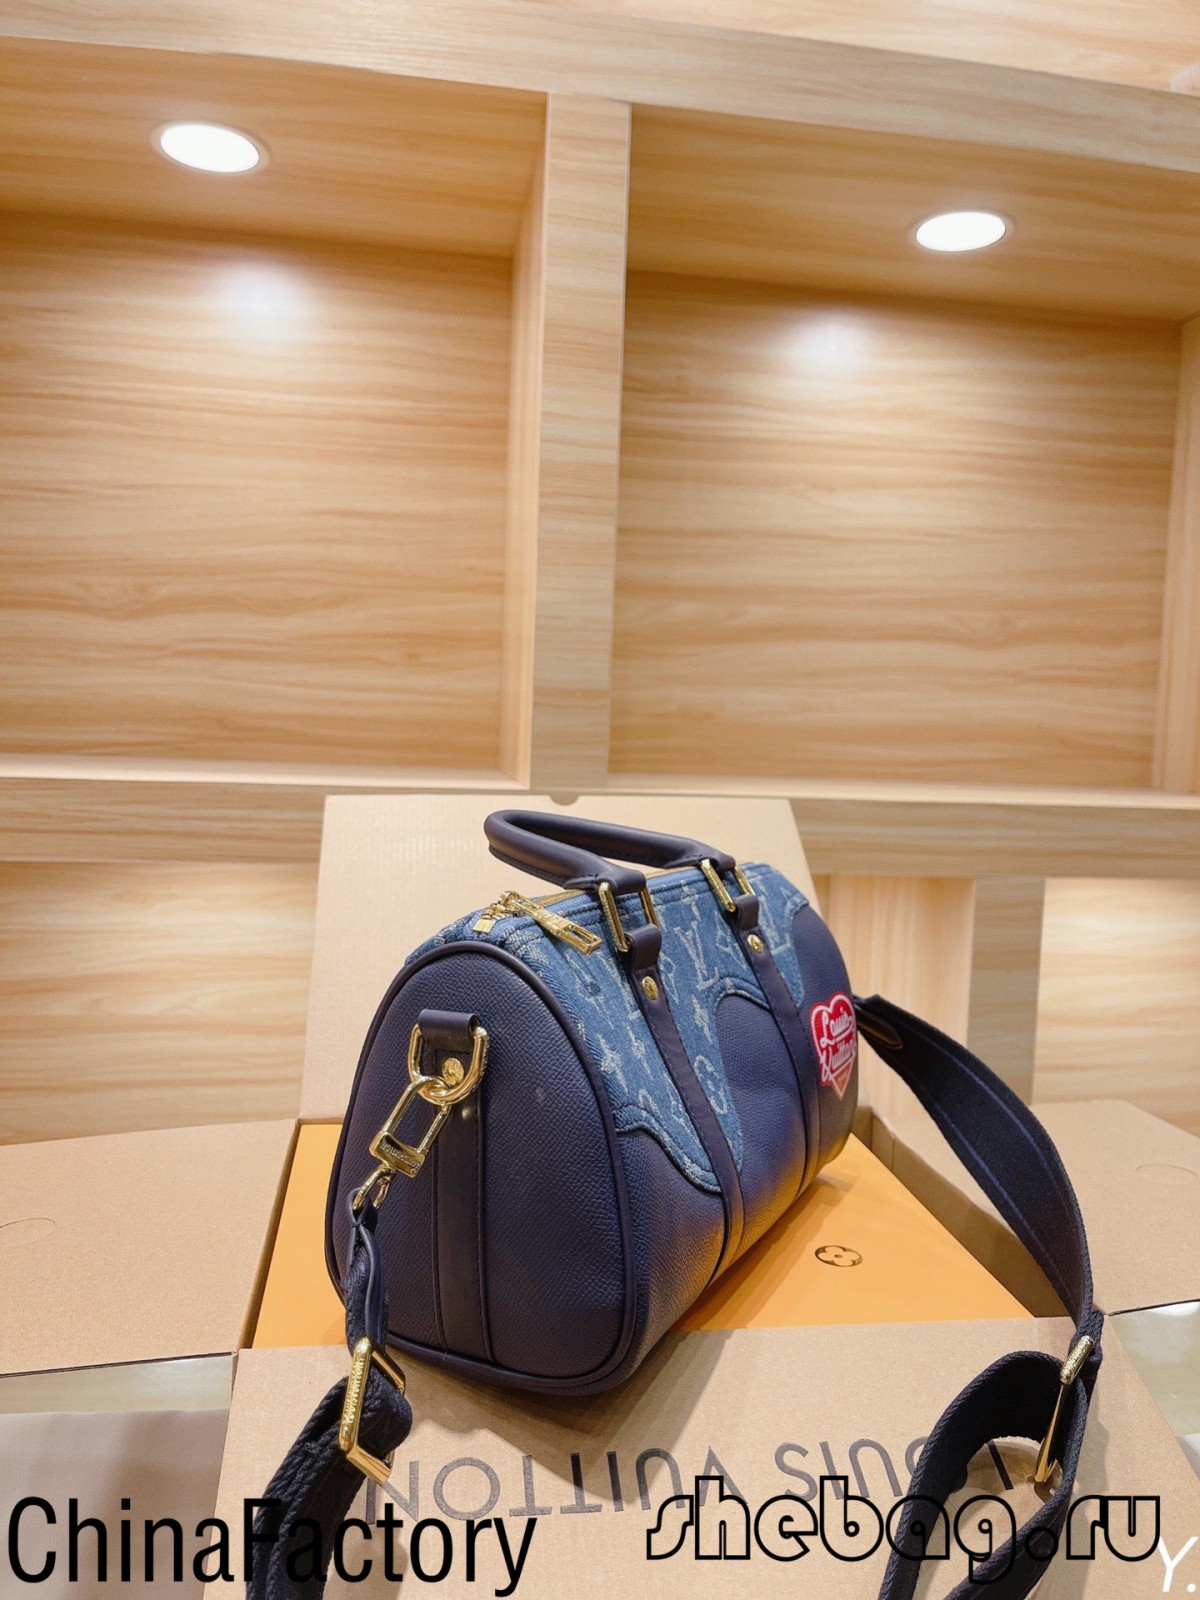 Aaa Louis Vuitton Duffle Bag kopio: LV x nigo (2022 Plej Varma) - Plej Bonkvalita Fake Louis Vuitton Bag Online Store, Replica designer bag ru